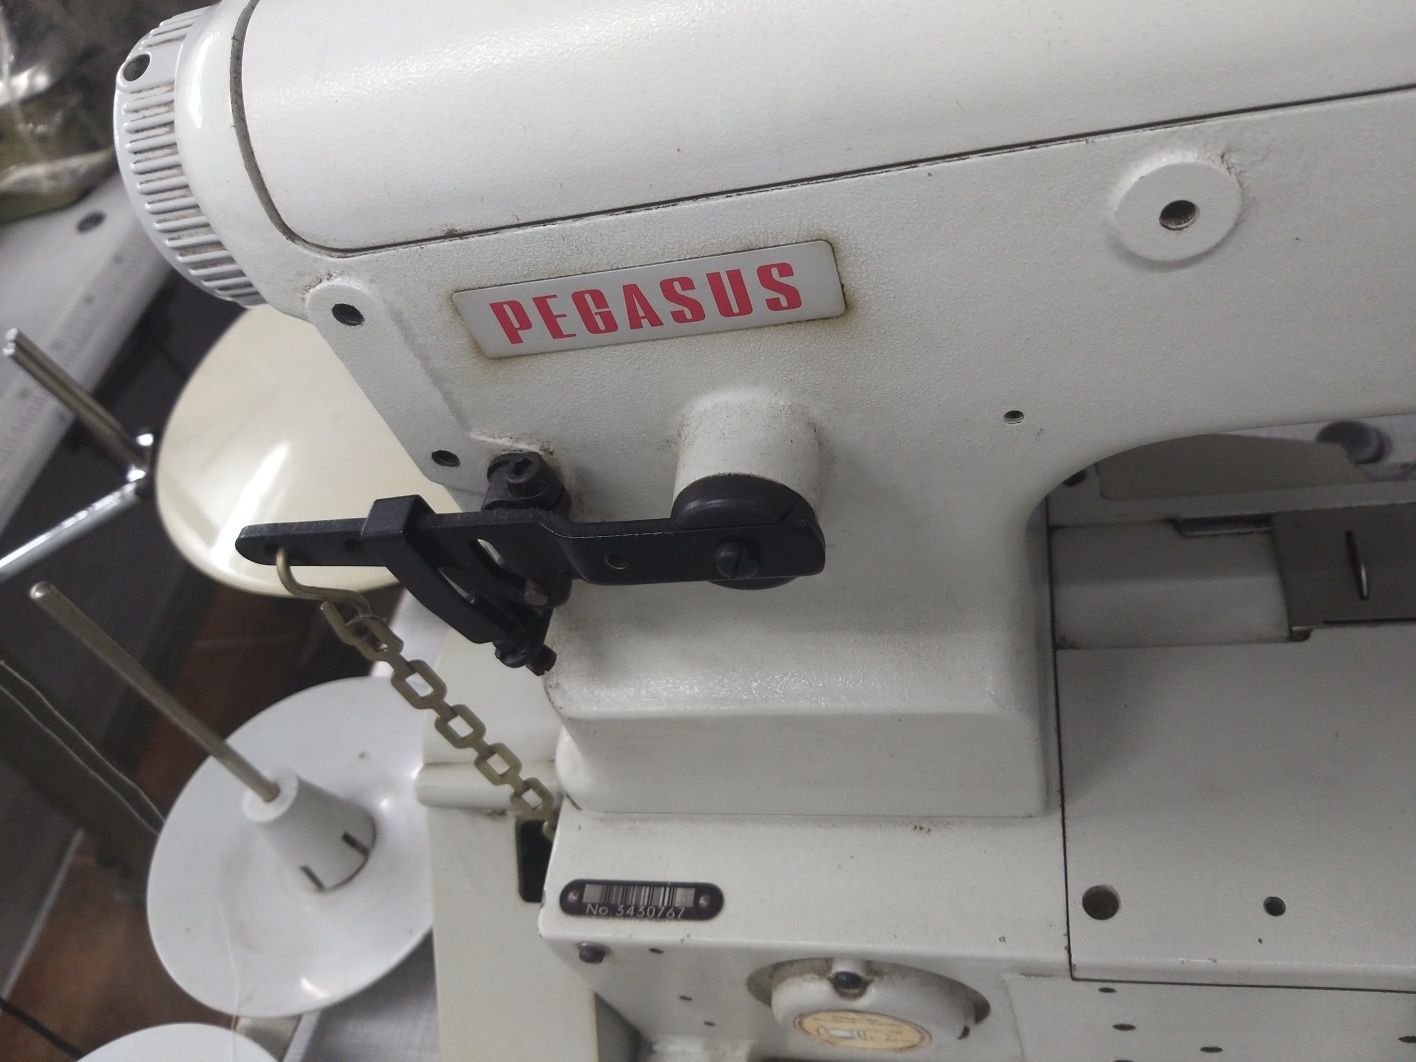 Maquina costura profissional
- Recobrimento / Colarete